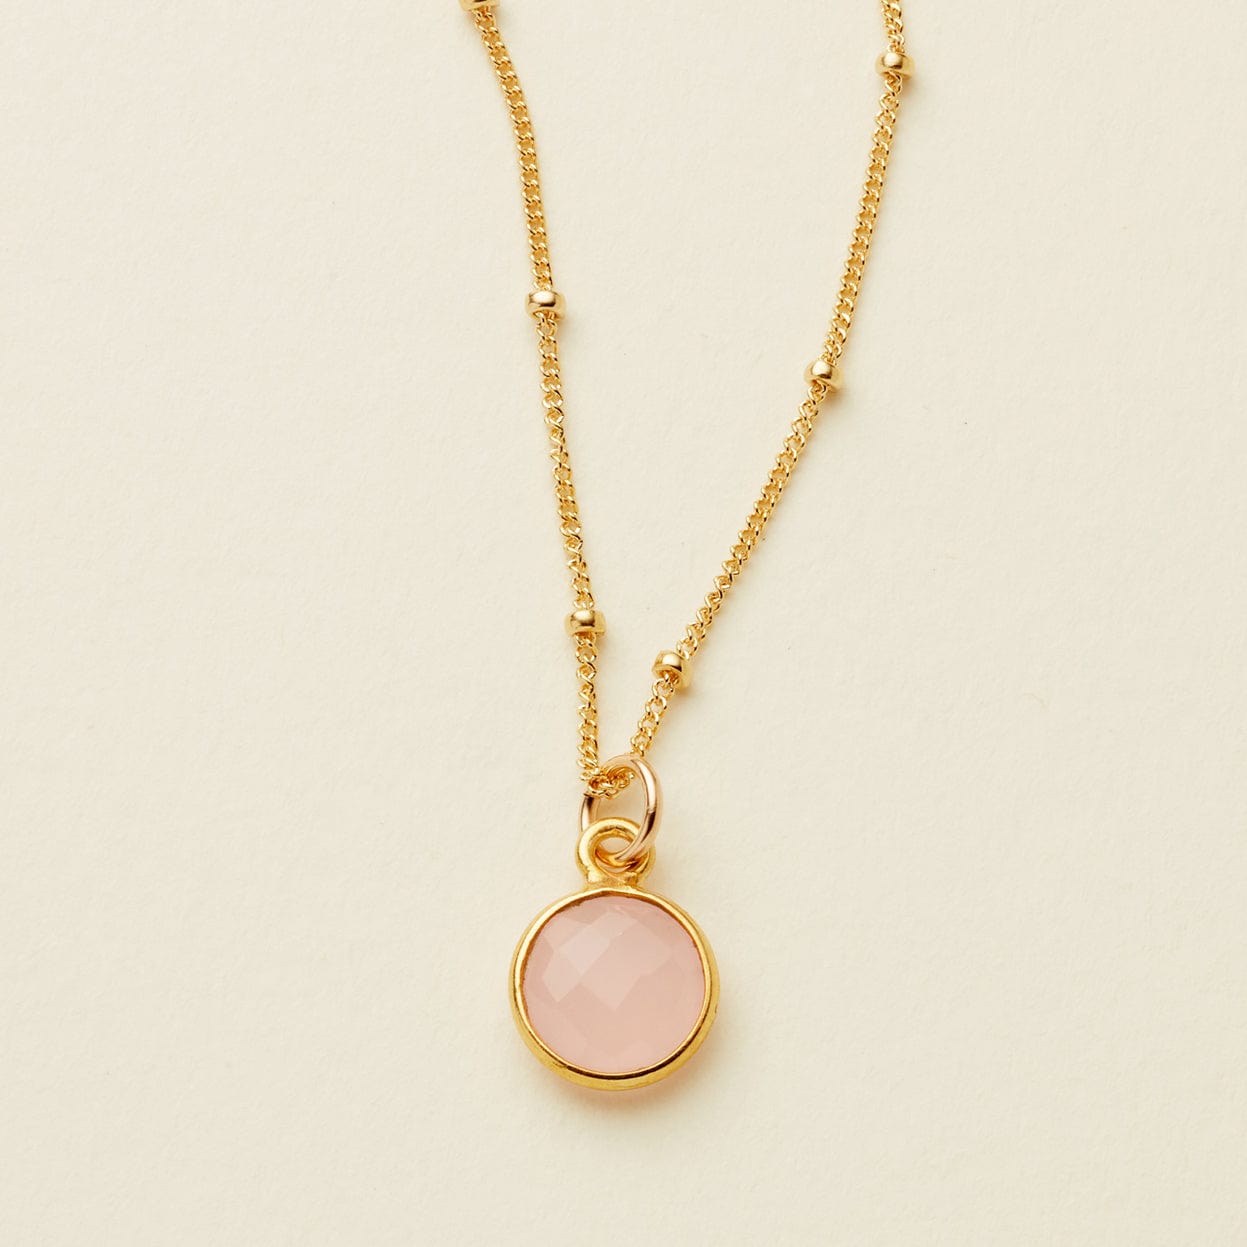 Petal Gemstone Necklace Gold Filled / 16" Necklace